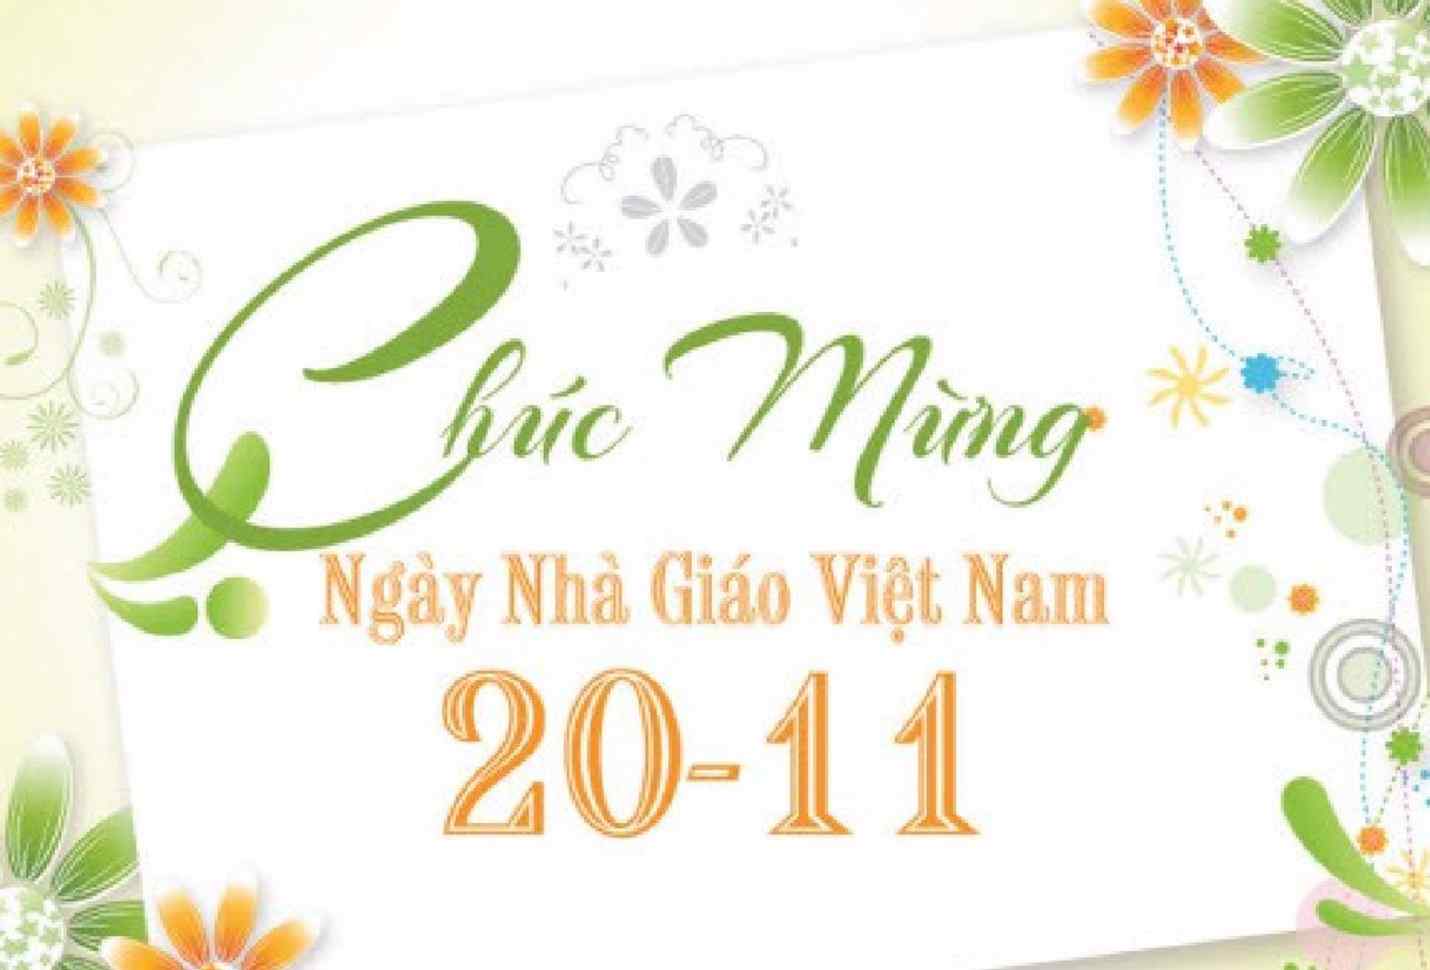 Những lời chúc ý nghĩa nhất ngày 20-11 dành cho các thầy, các cô nhân ngày  Nhà Giáo Việt Nam | Wecheckin